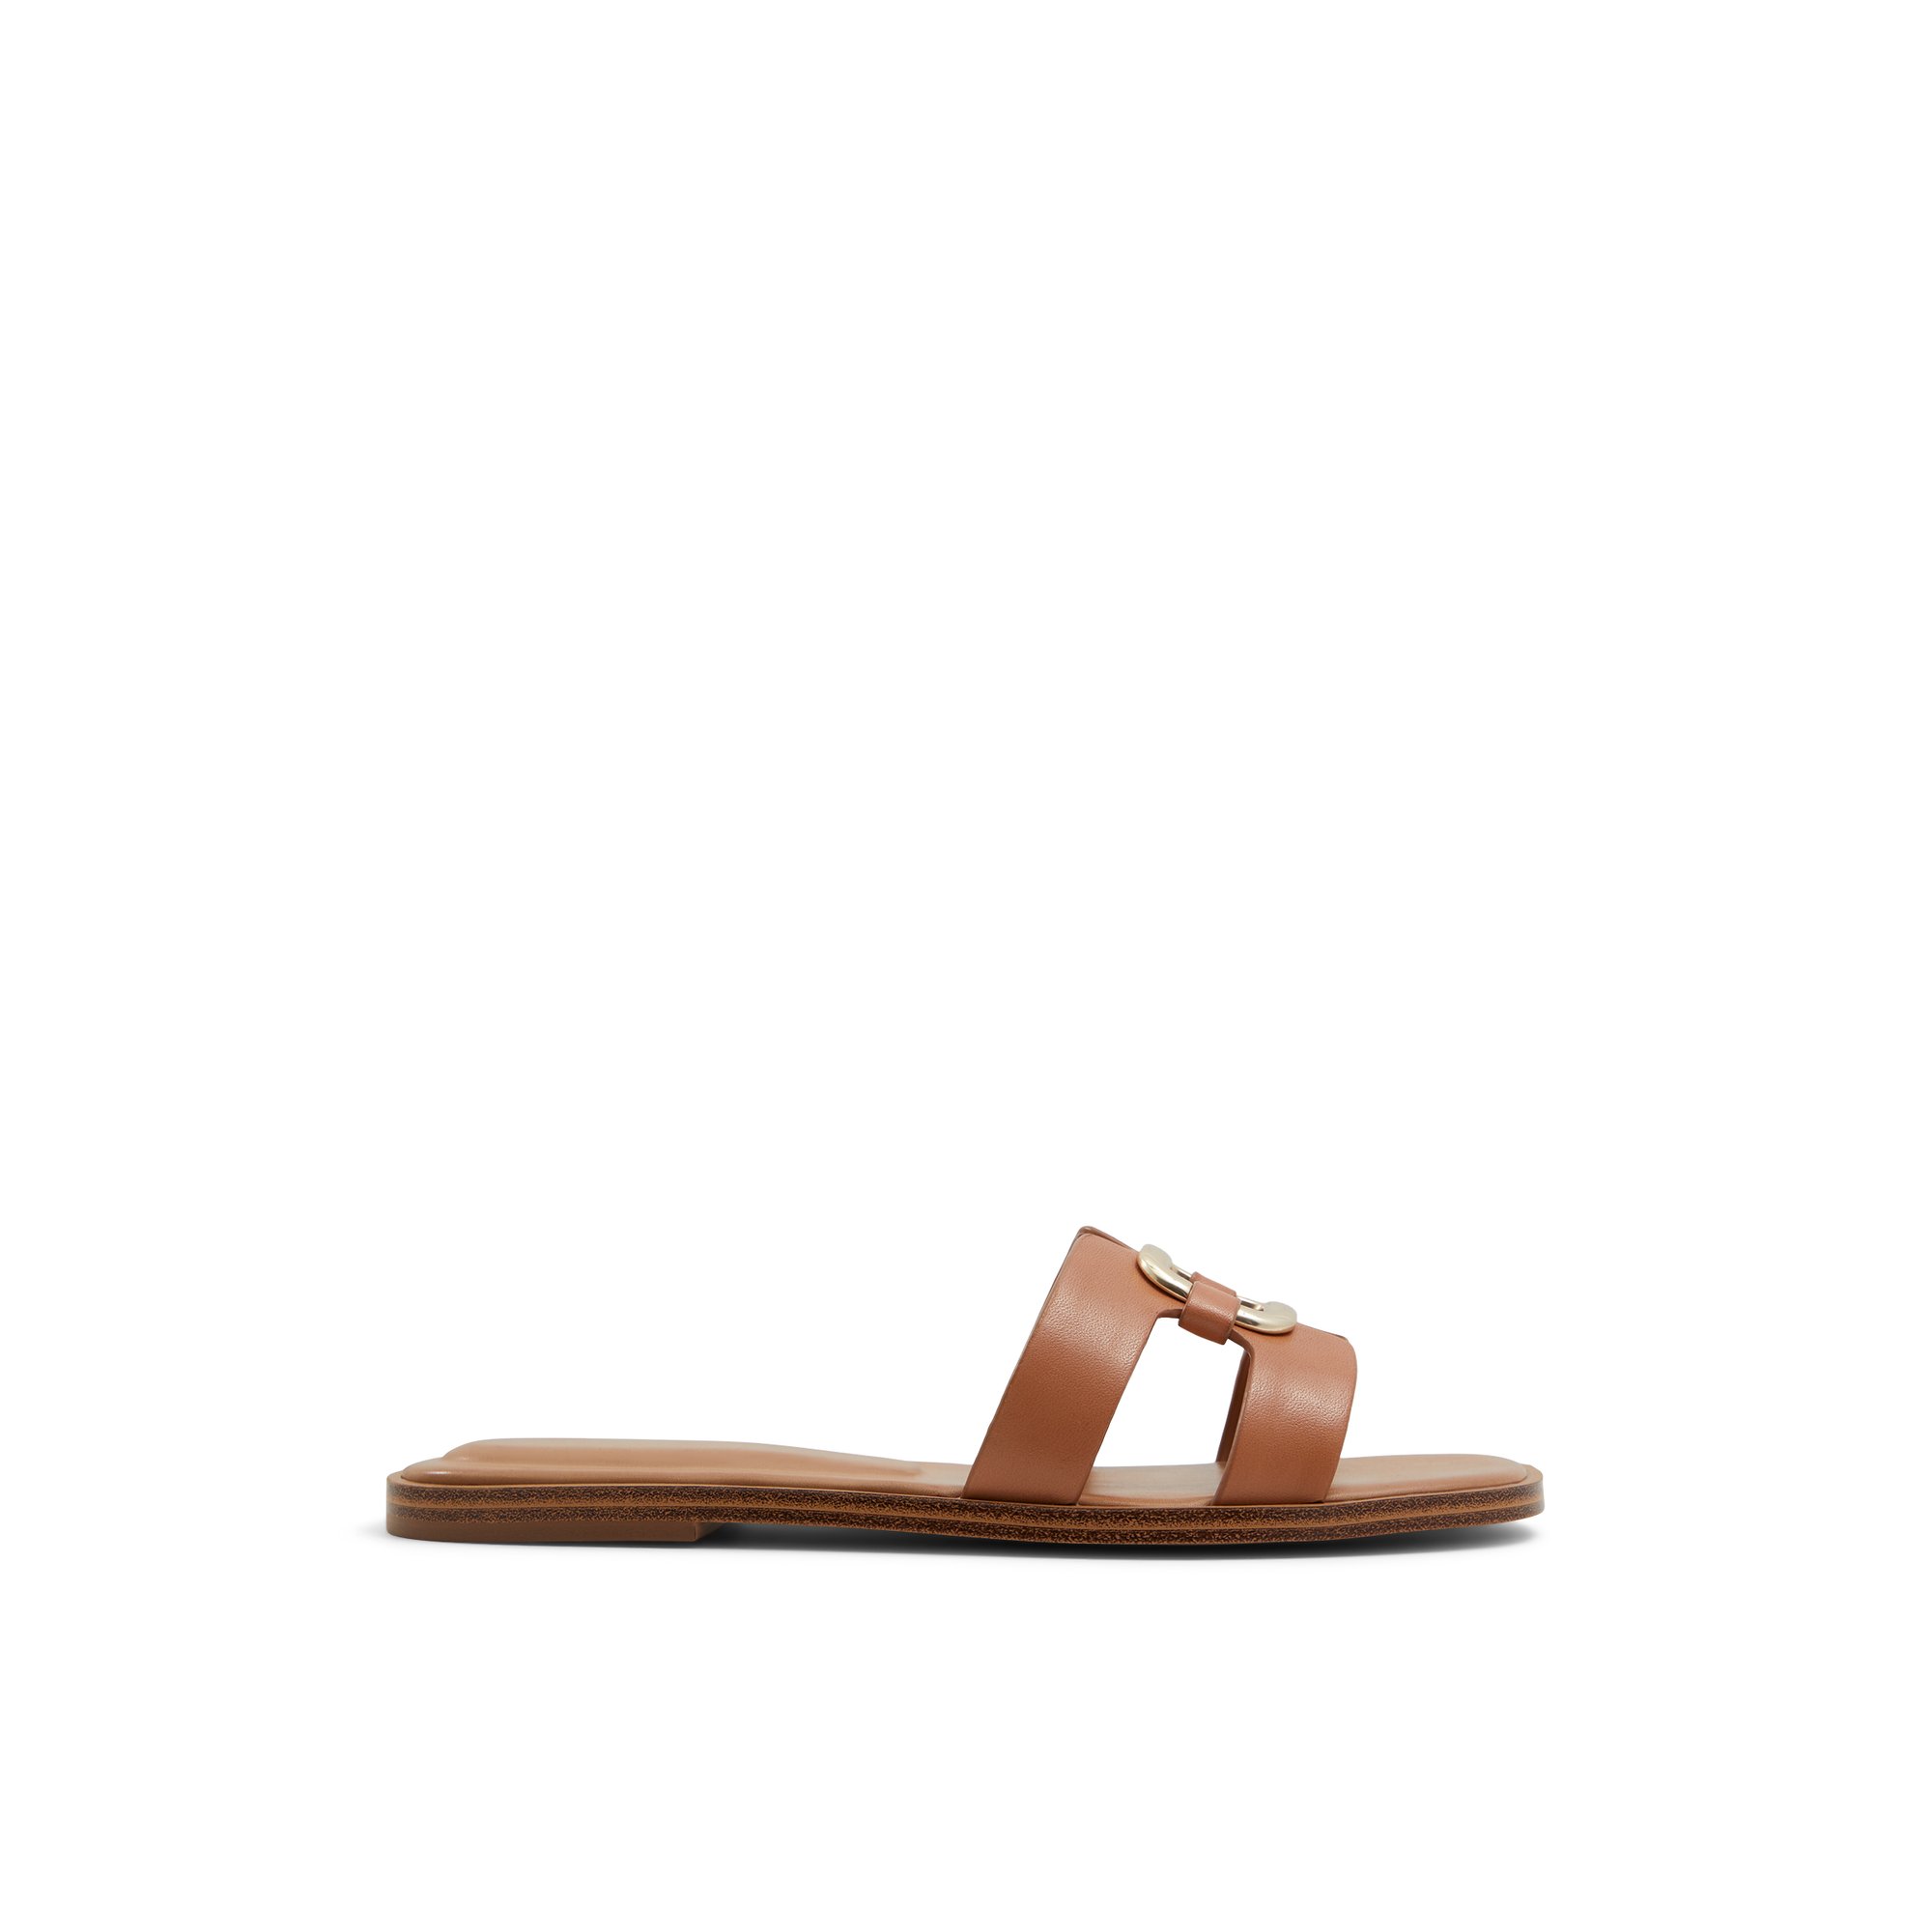 ALDO Nydaokin - Women's Sandals Flats - Beige